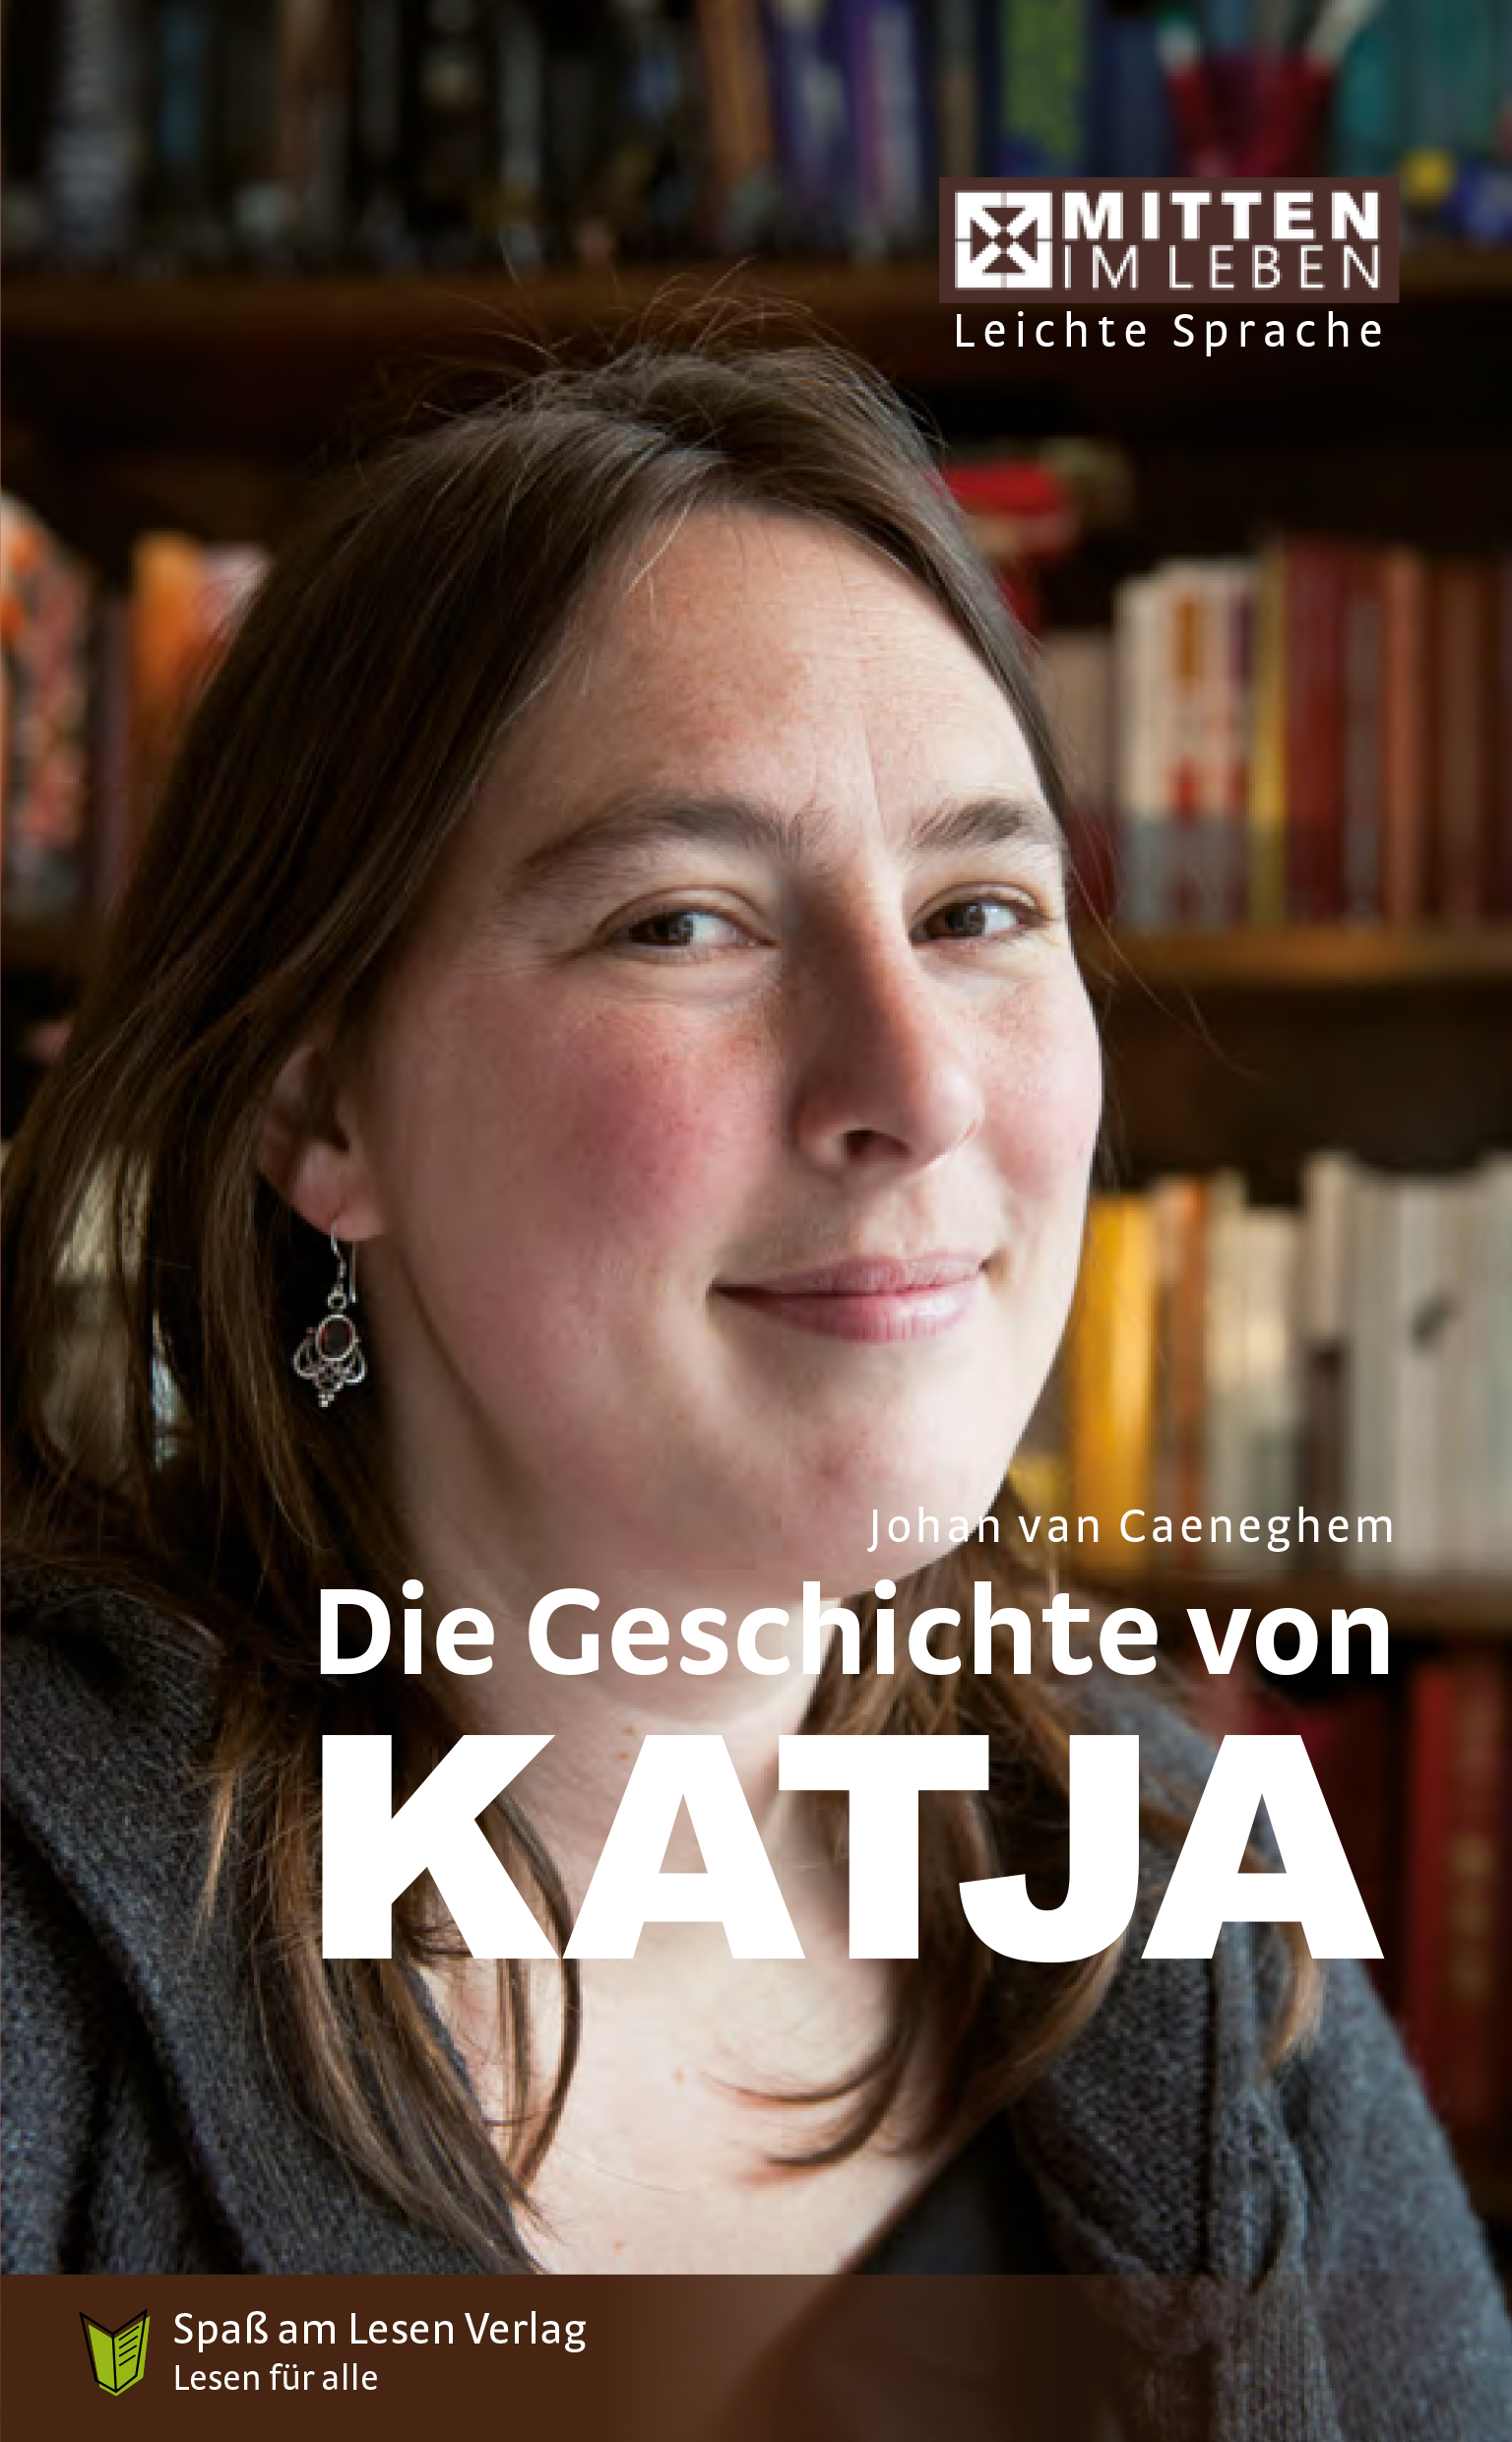 Cover des Buches "Die Geschichte von Katja"